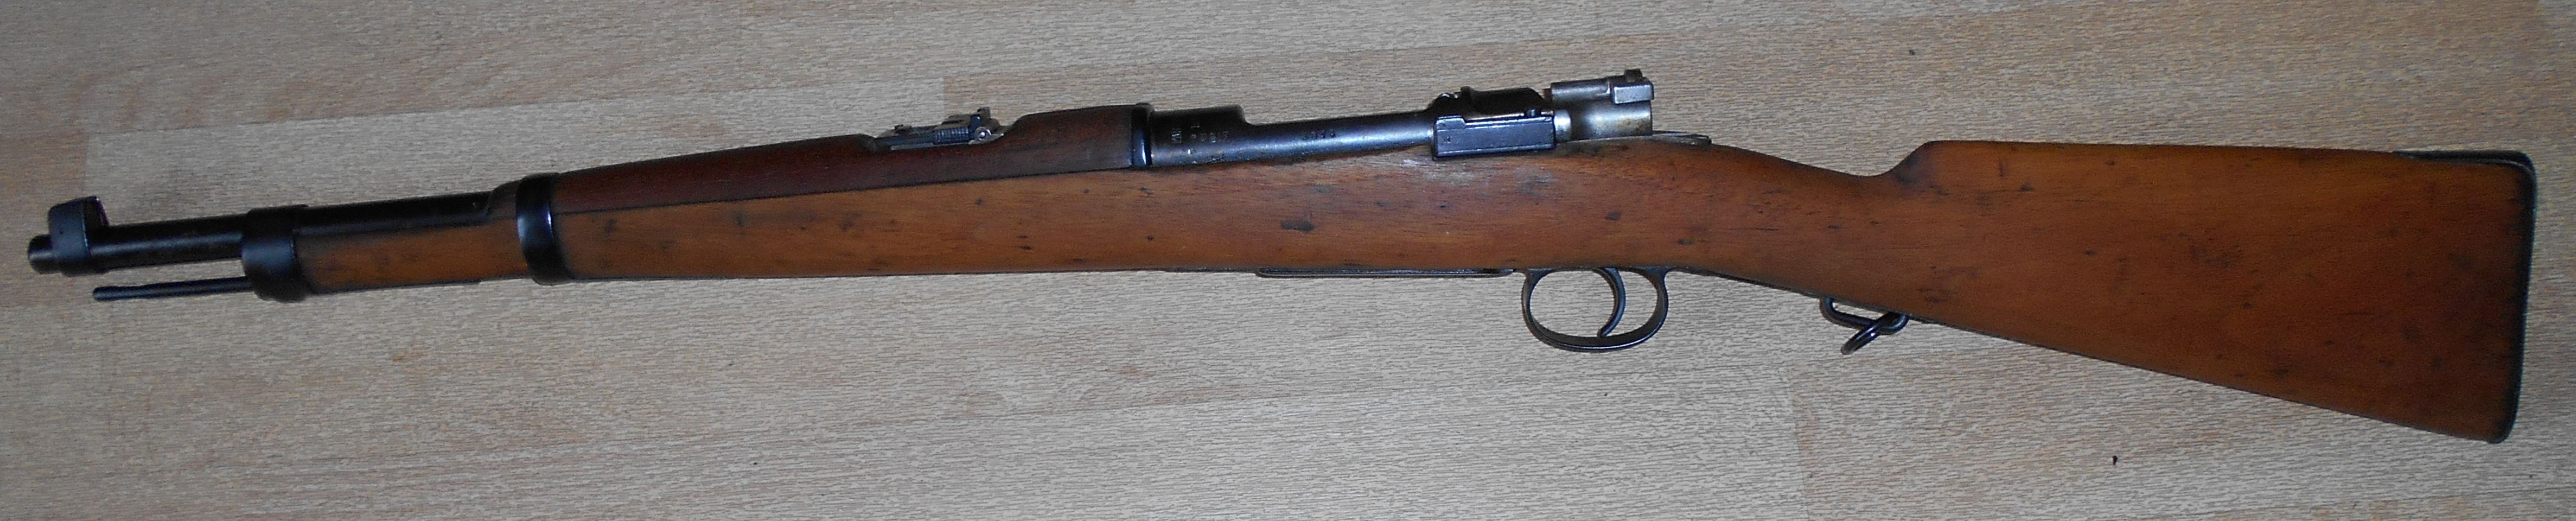 Mauser brésilien Mle 1894 (carabine)